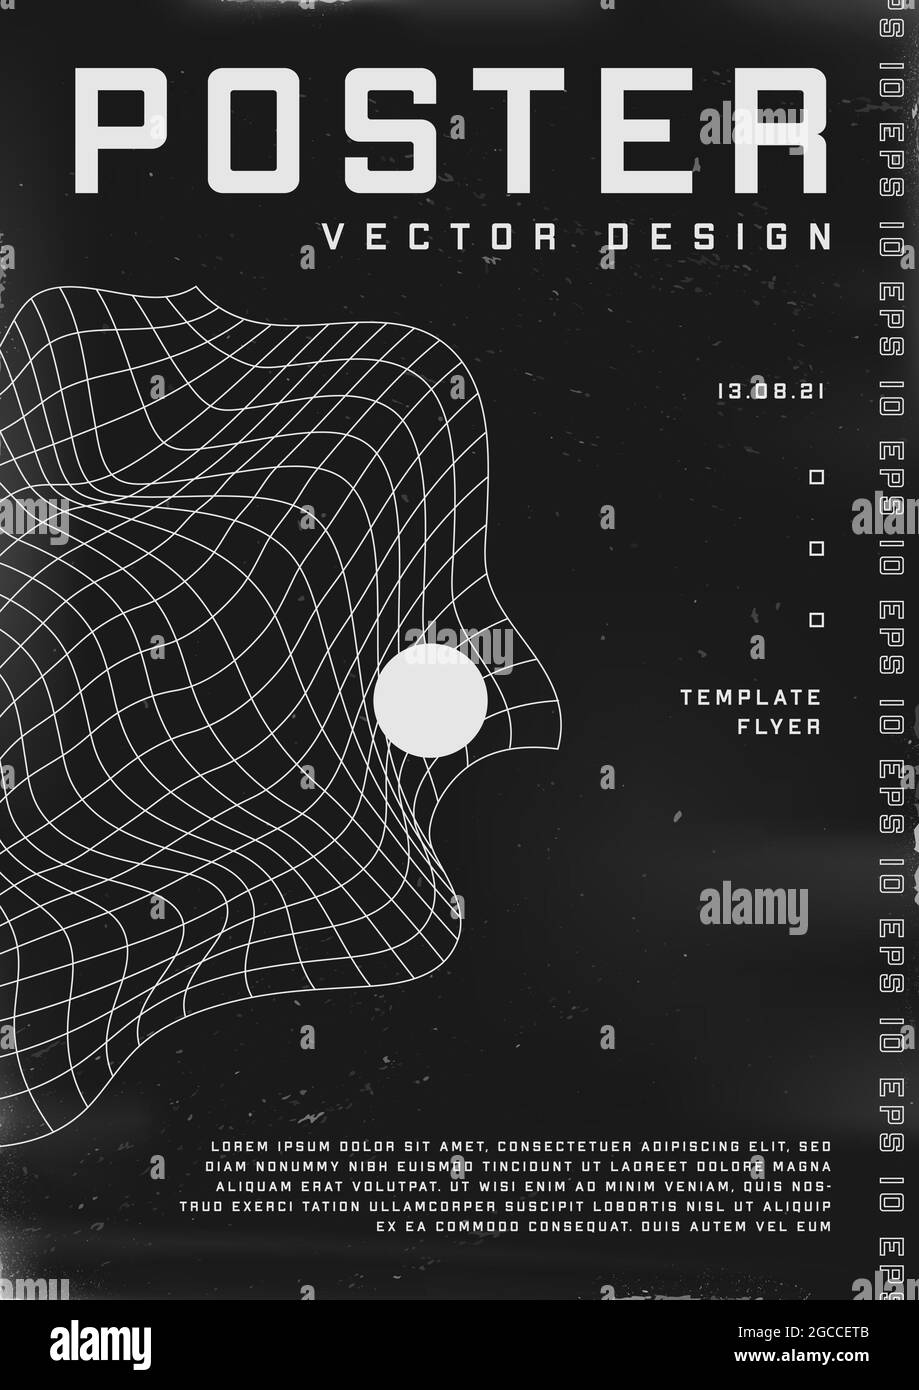 Poster dal design retrovuturistico. Poster in stile cyberpunk degli anni '80 con griglia e sfera distorte a liquido. Modello shabby graffiato flyer per il tuo design Illustrazione Vettoriale